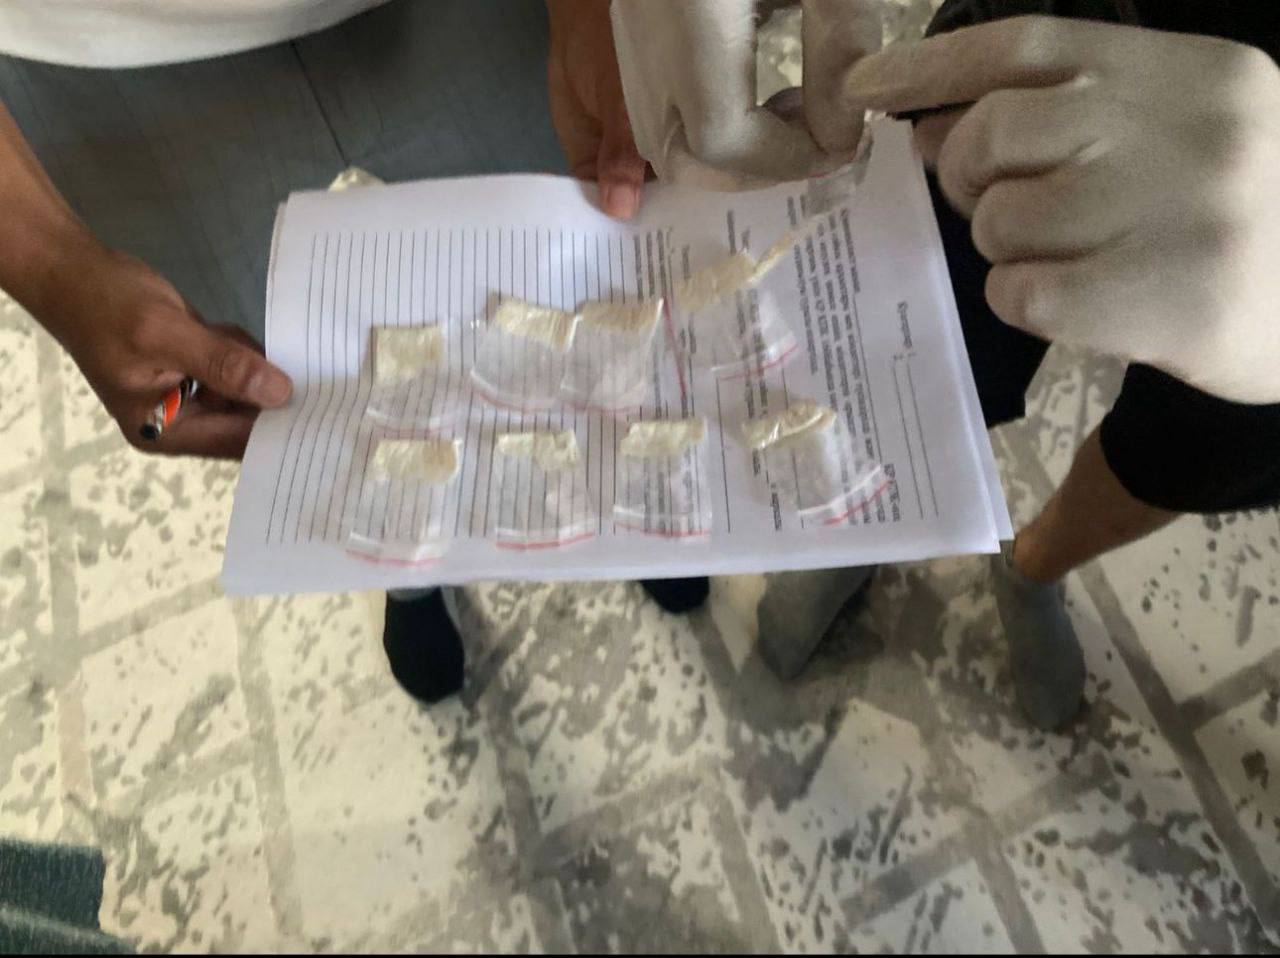 22 свертка с психостимулятором α-PVP обнаружили у жителя Актюбинской области